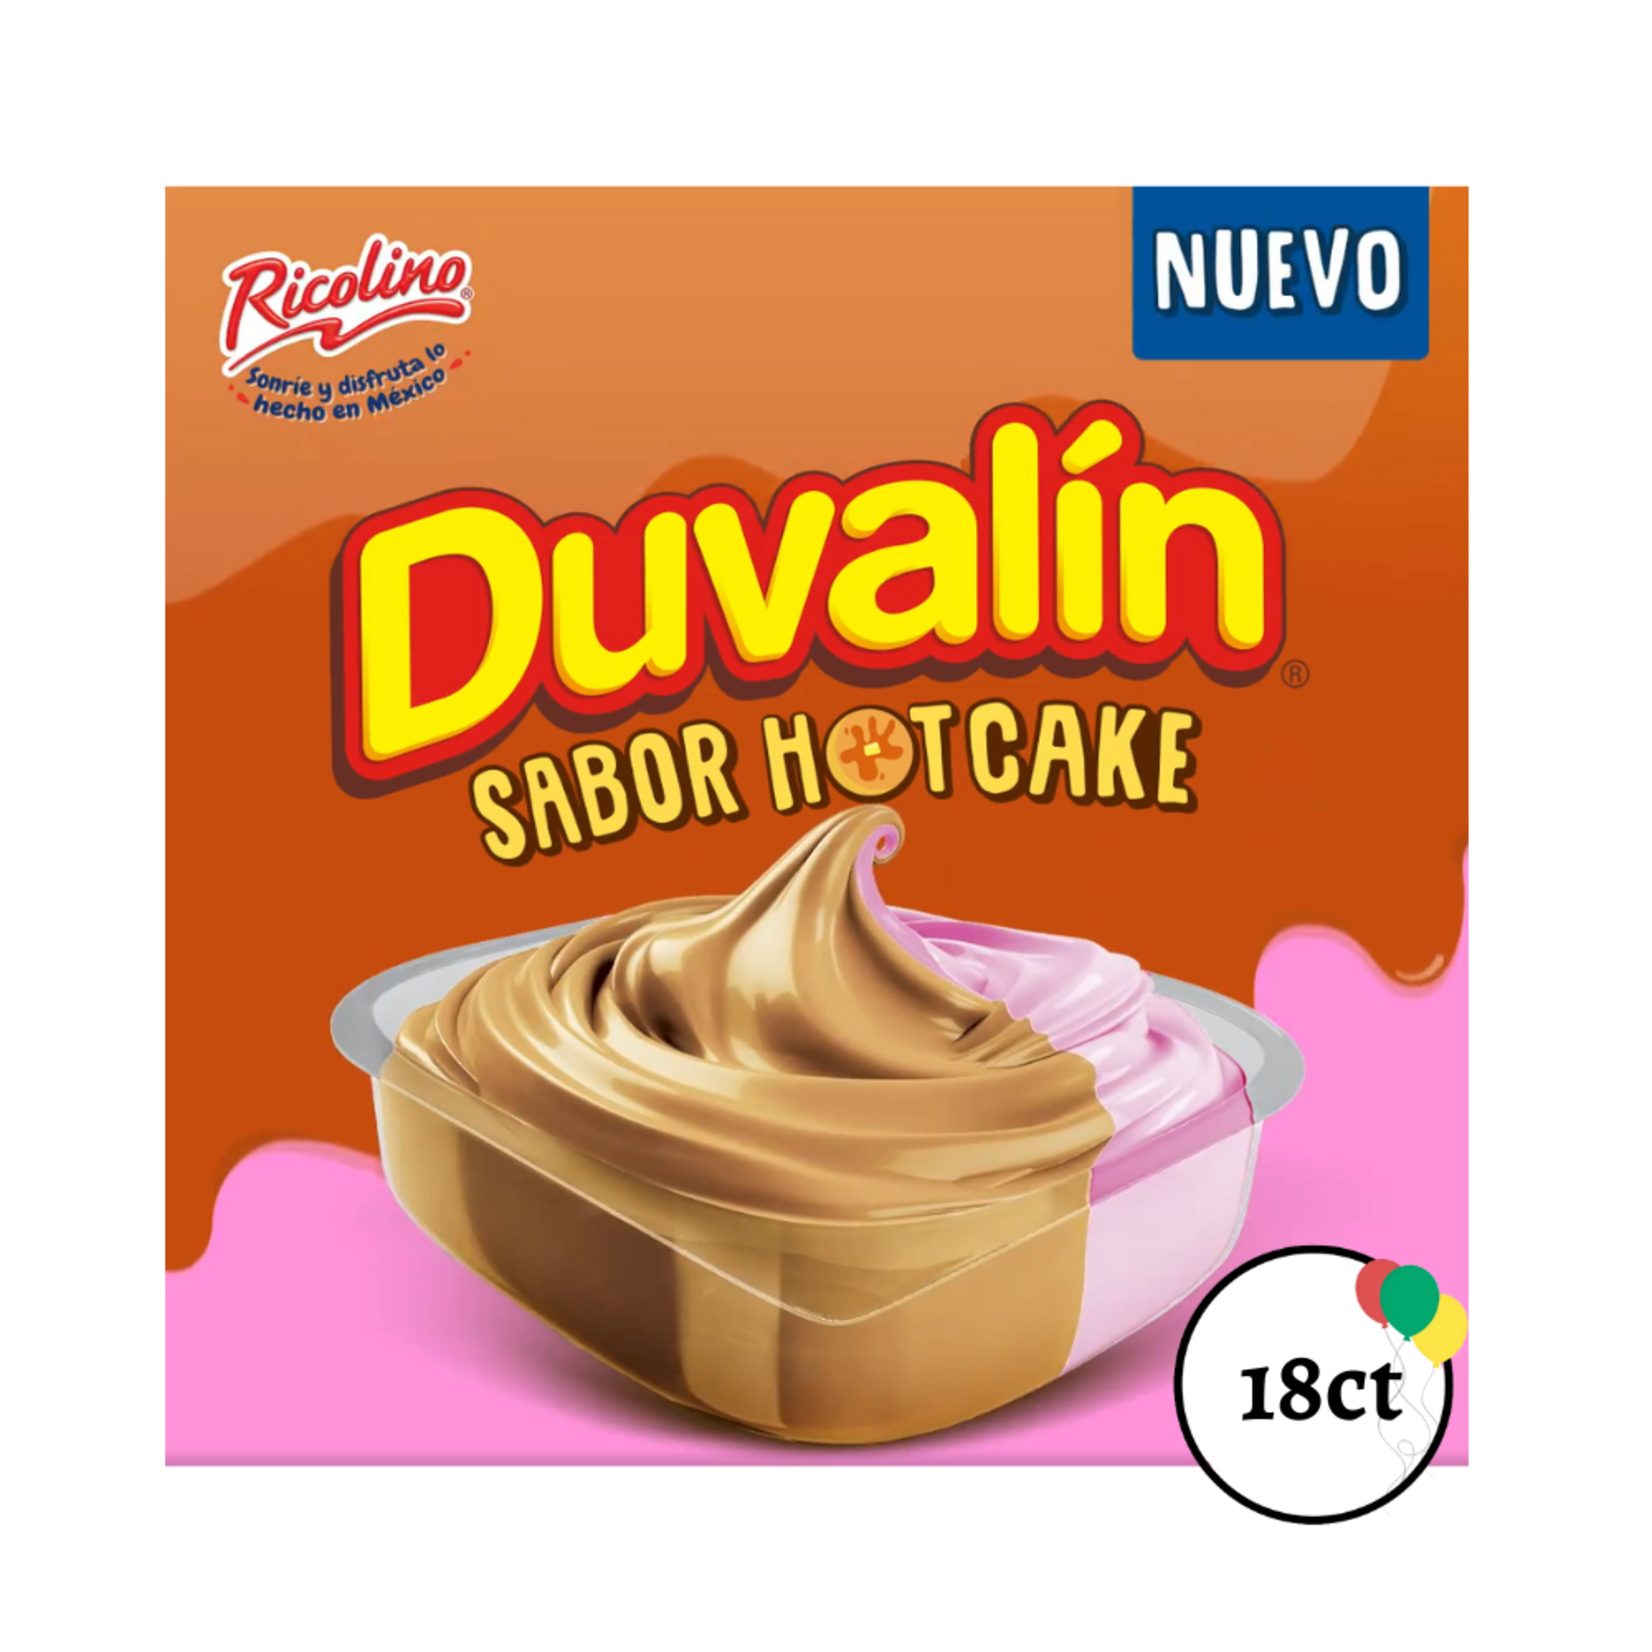 Ricolino Duvalin Hotcake